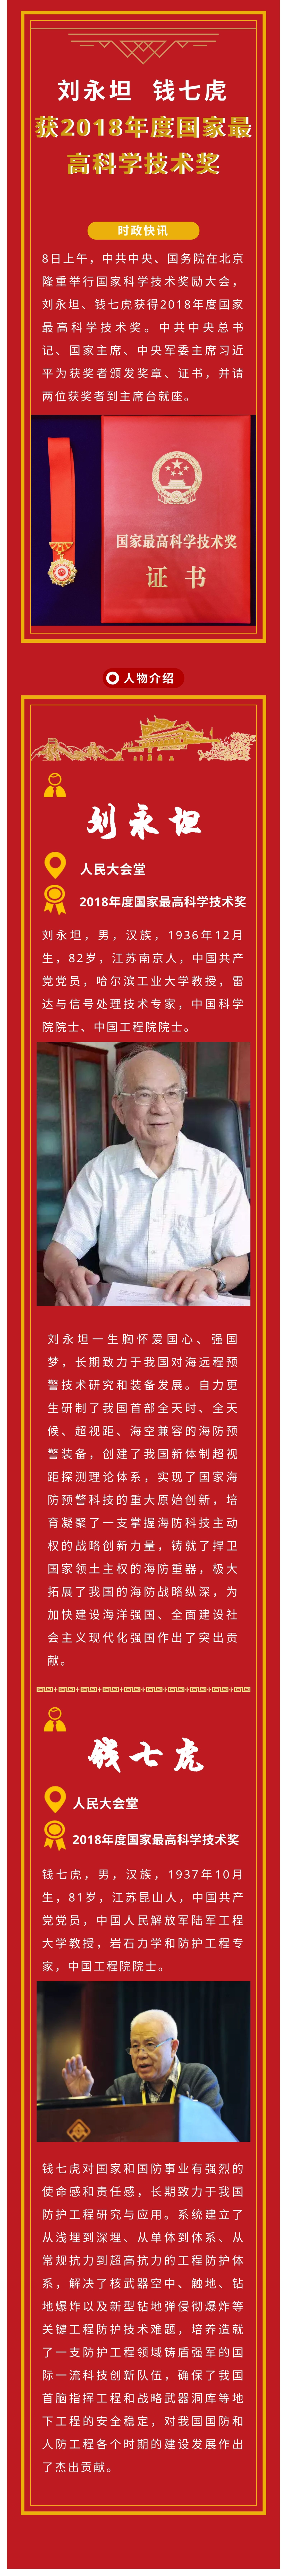 刘永坦、钱七虎获得2018年度国家最高科学技术奖